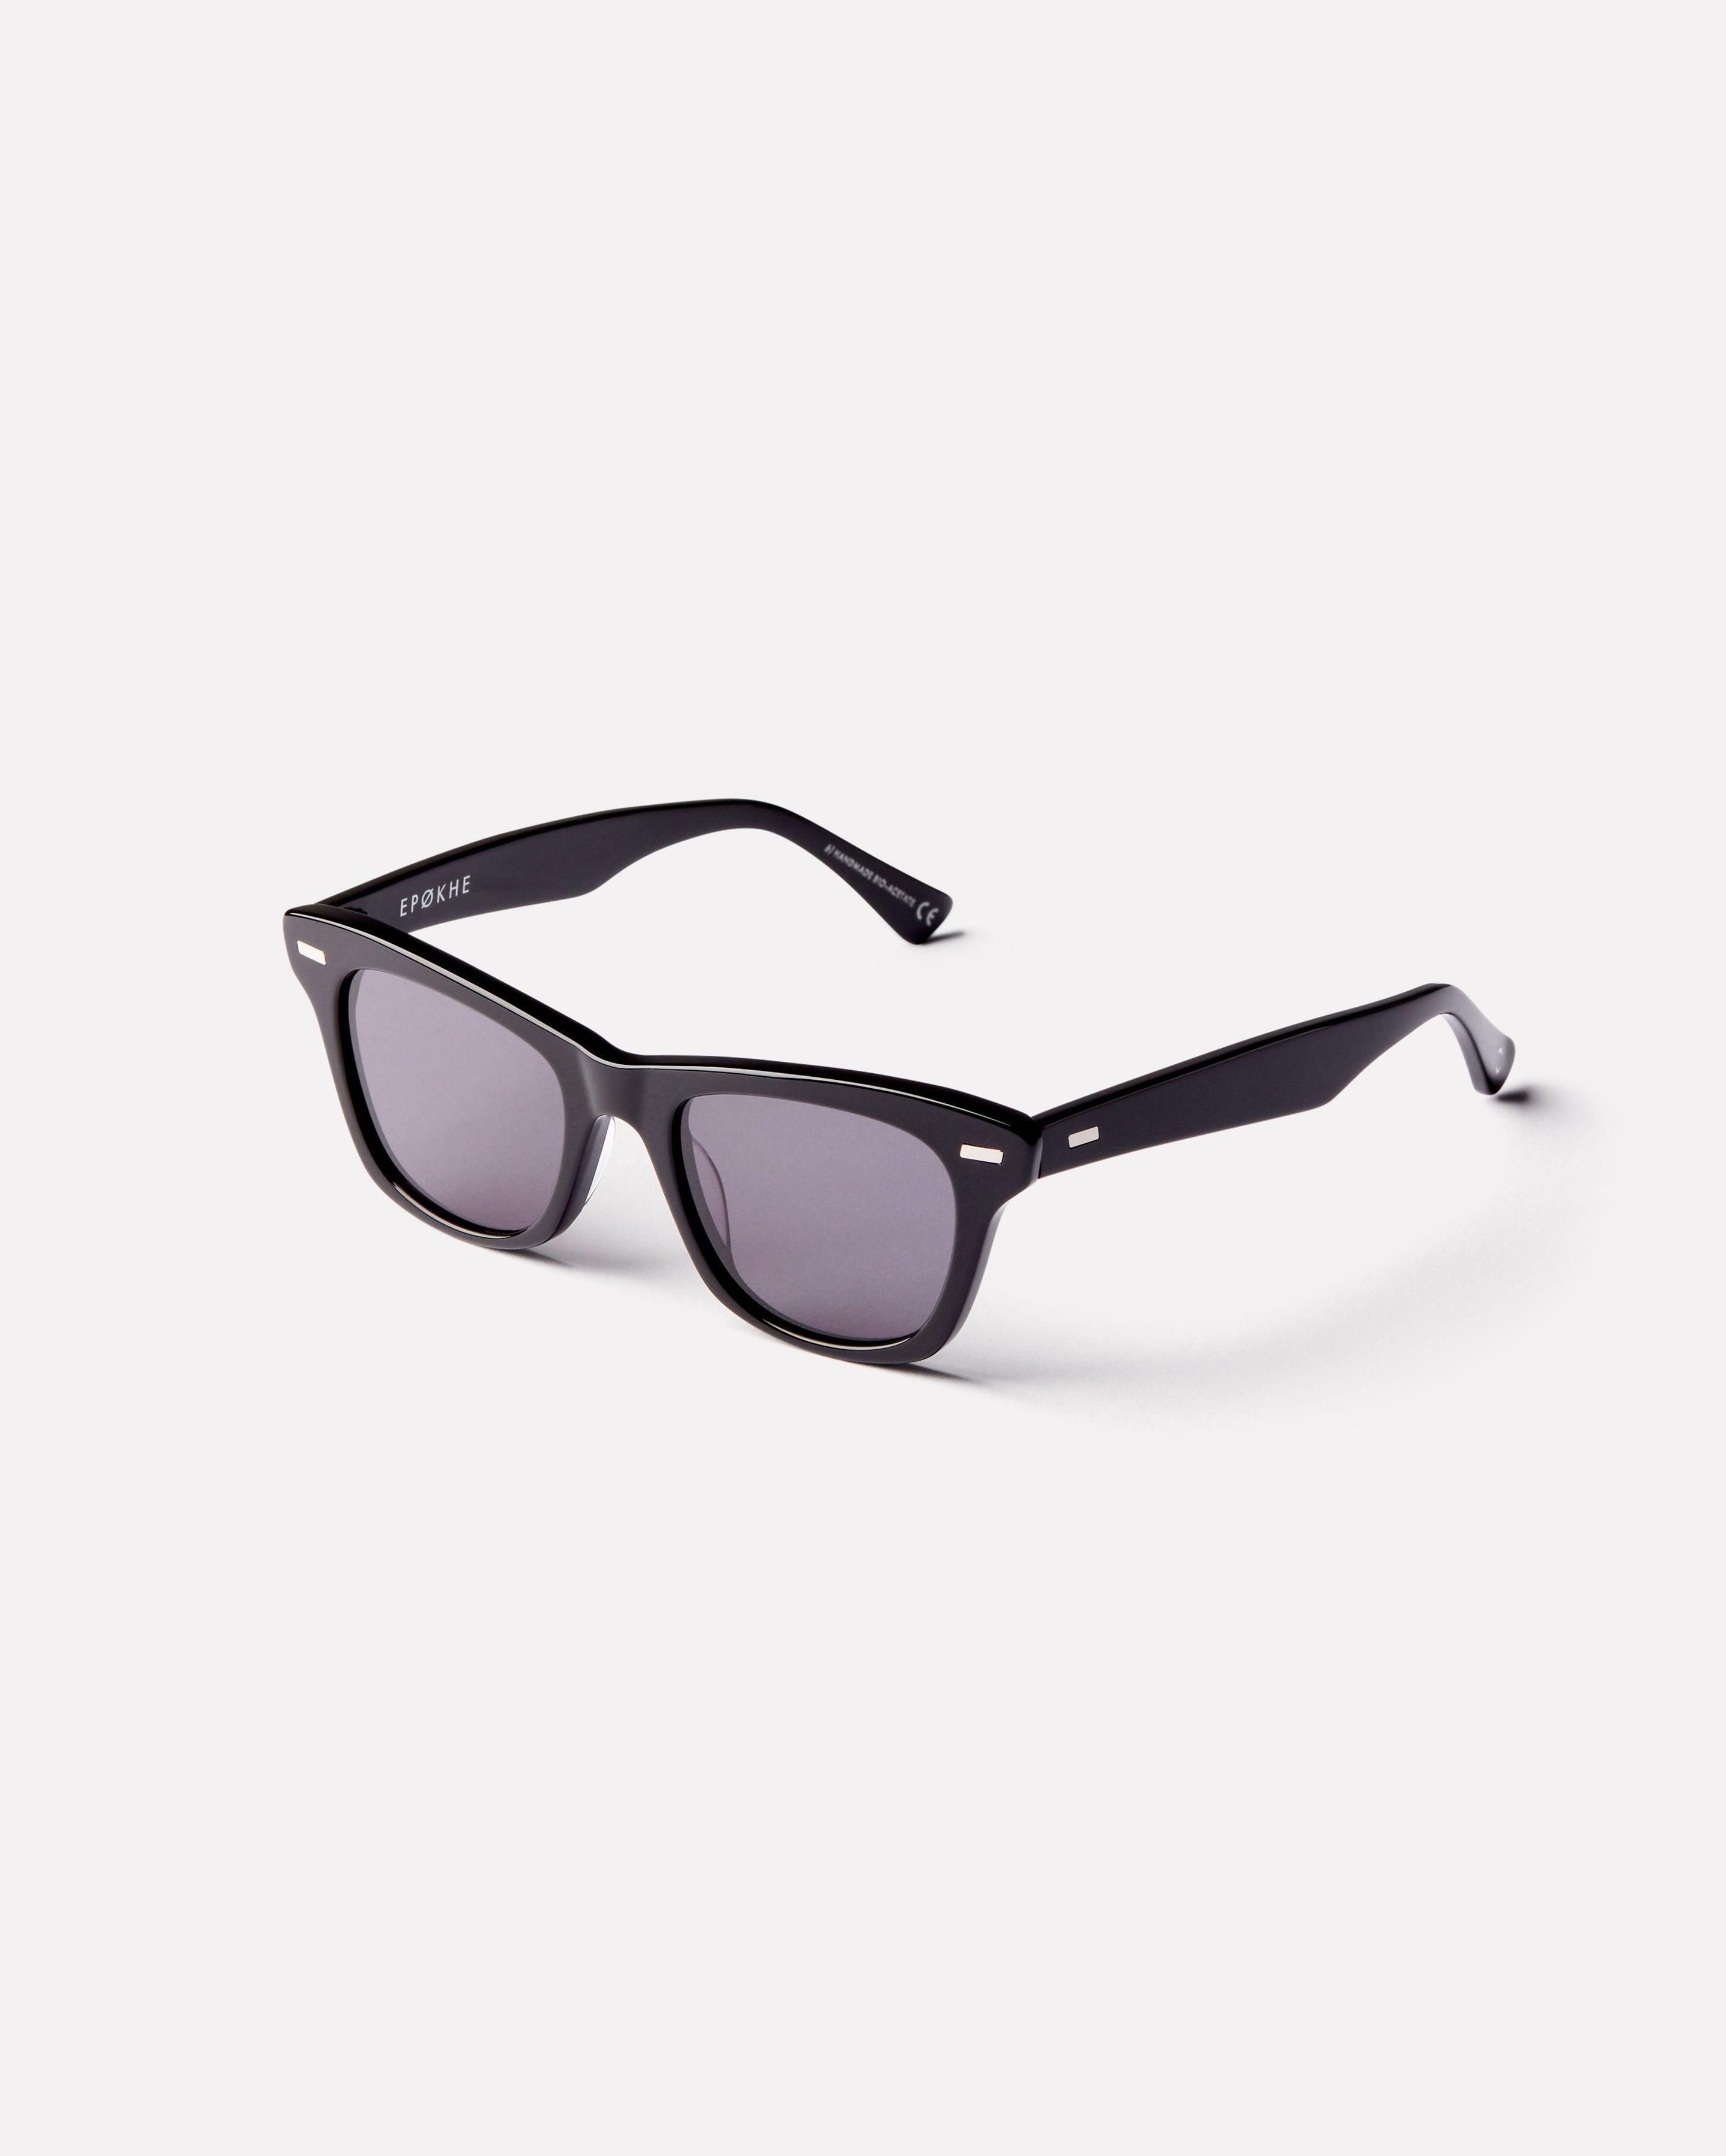 SZEX - Black Polished / Black - Sunglasses - EPOKHE EYEWEAR